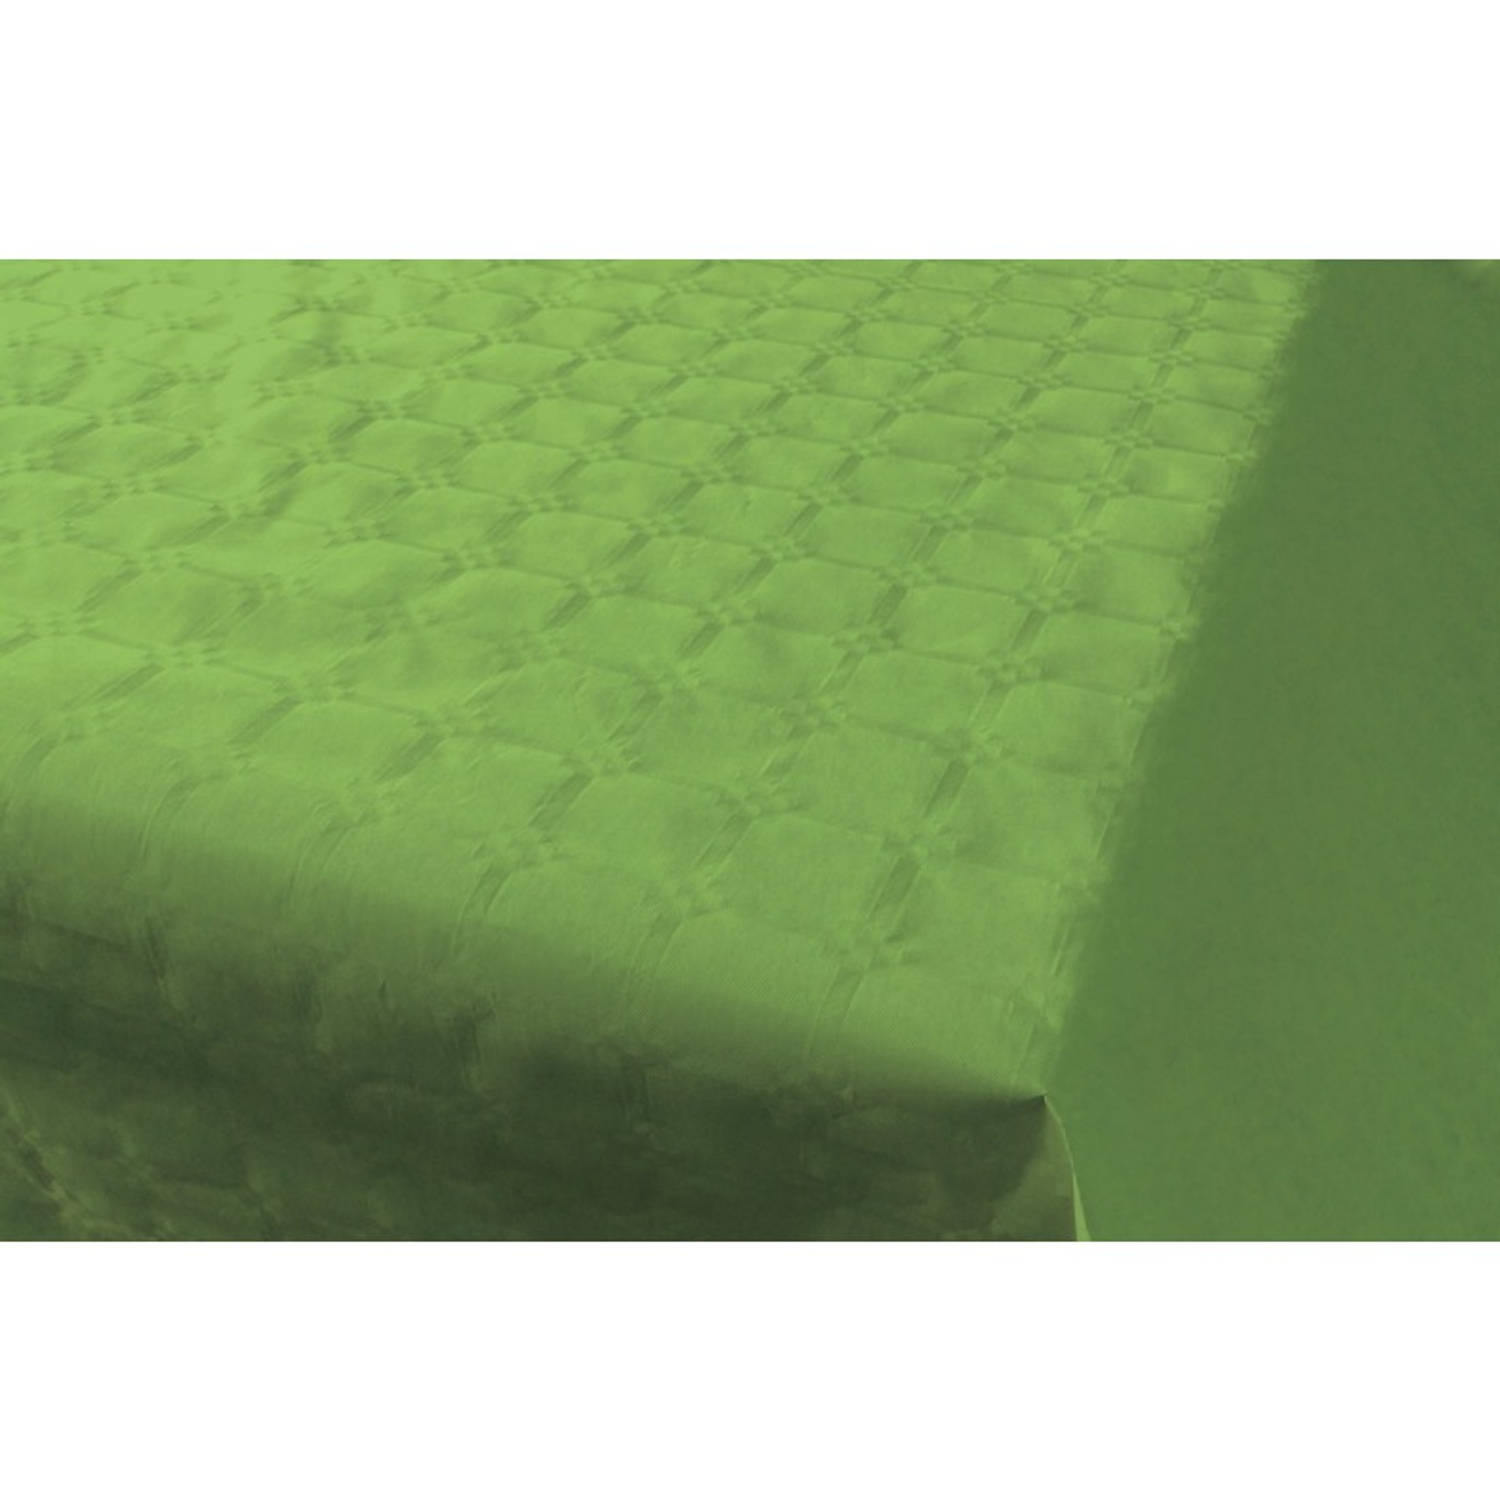 aanpassen Welsprekend koel Lichtgroen papieren tafellaken/tafelkleed 800 x 118 cm op rol - Licht  groene thema tafeldecoratie versieringen | Blokker